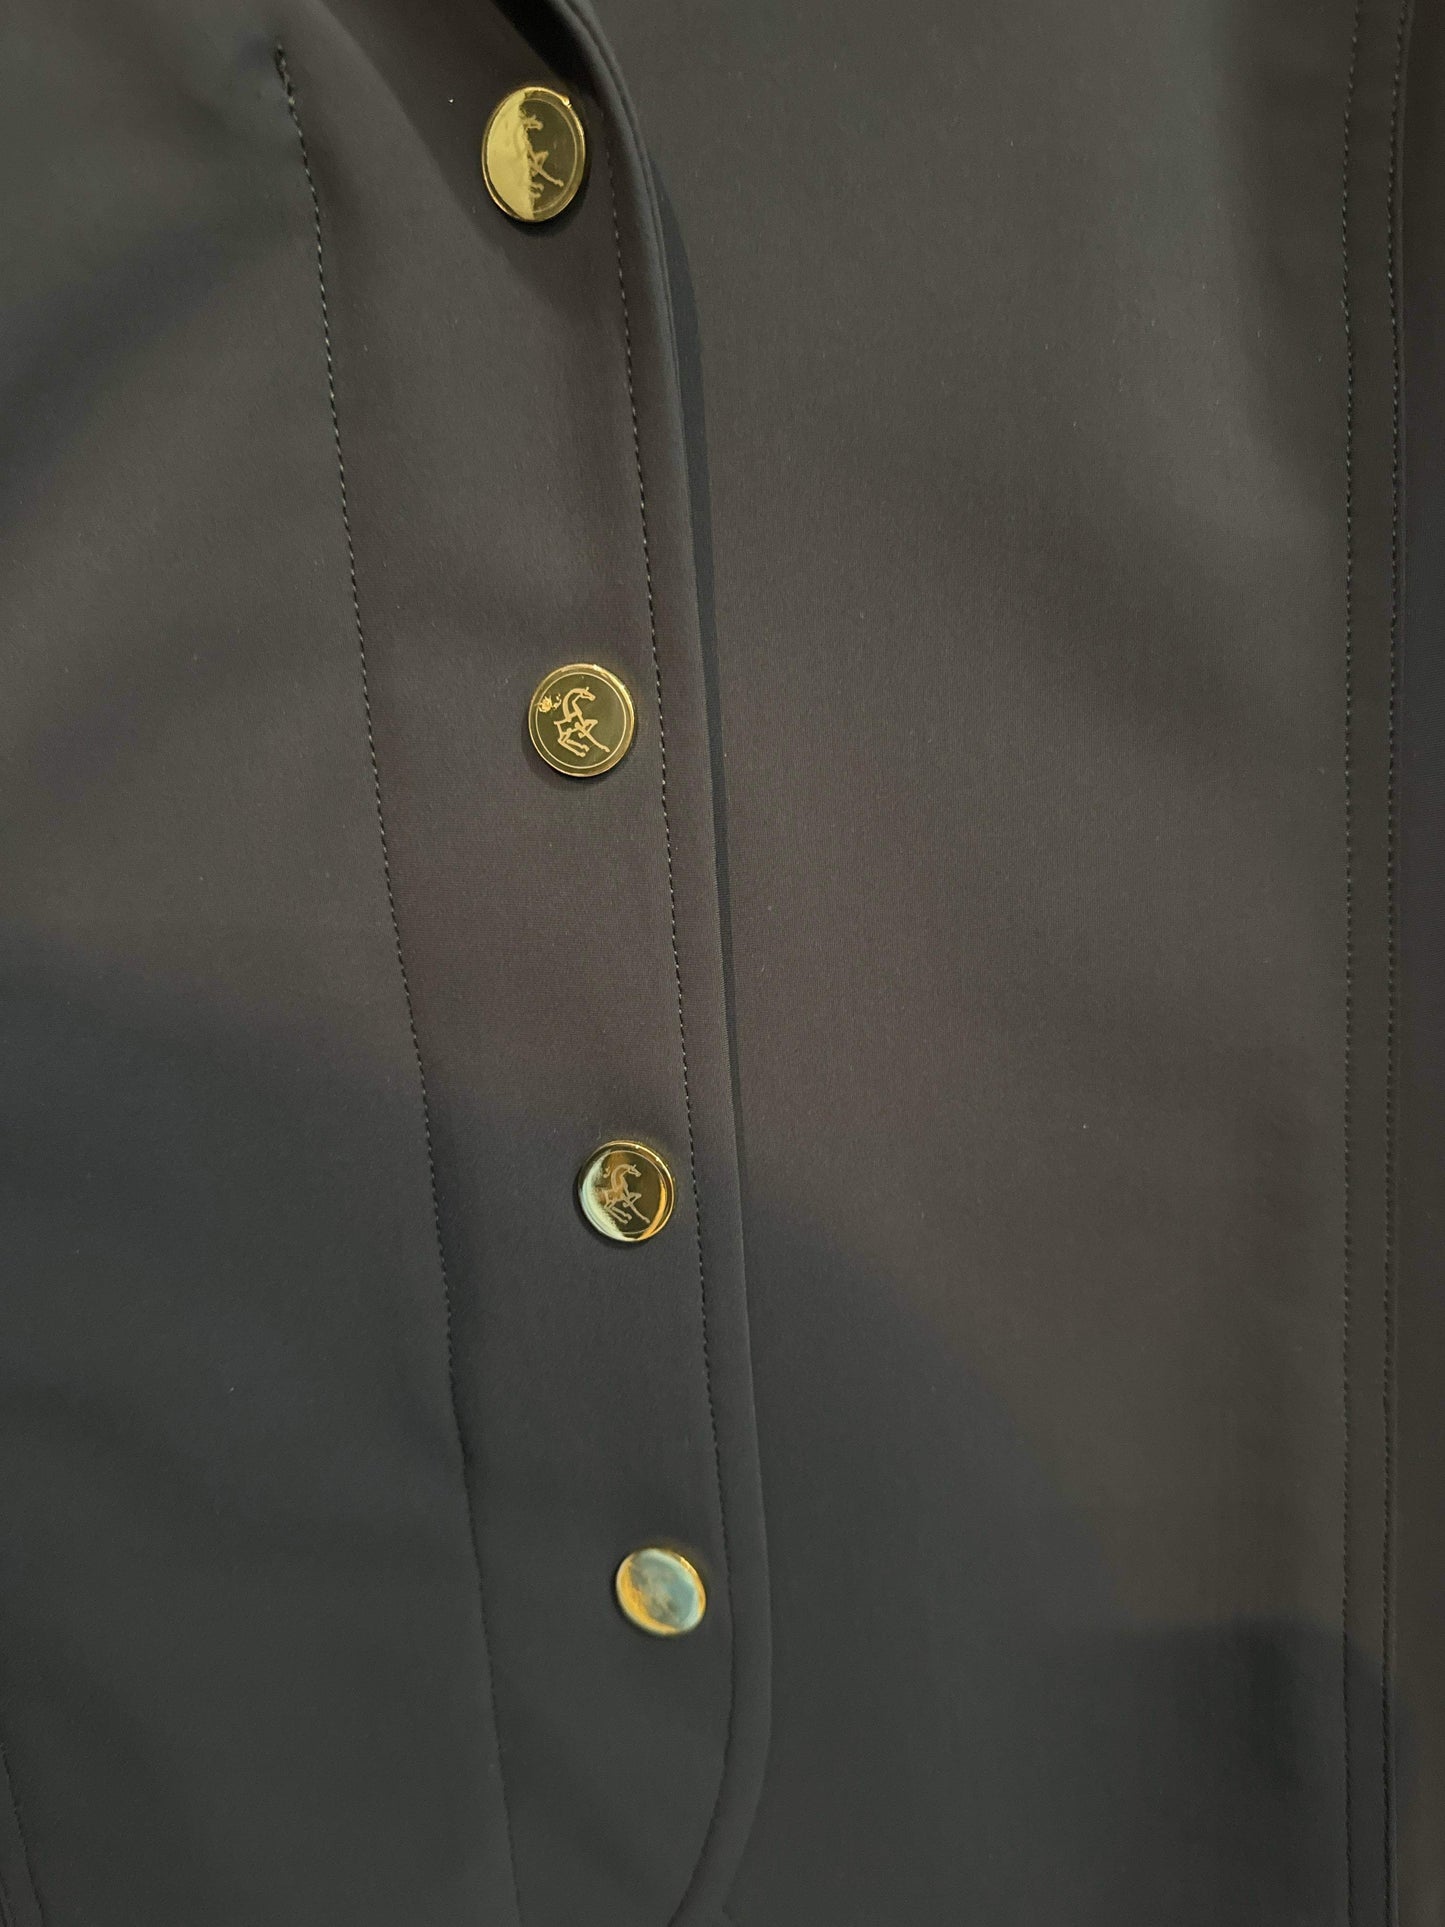 A Tiss B Quickstar Size Air Vest Compatible Show Coat